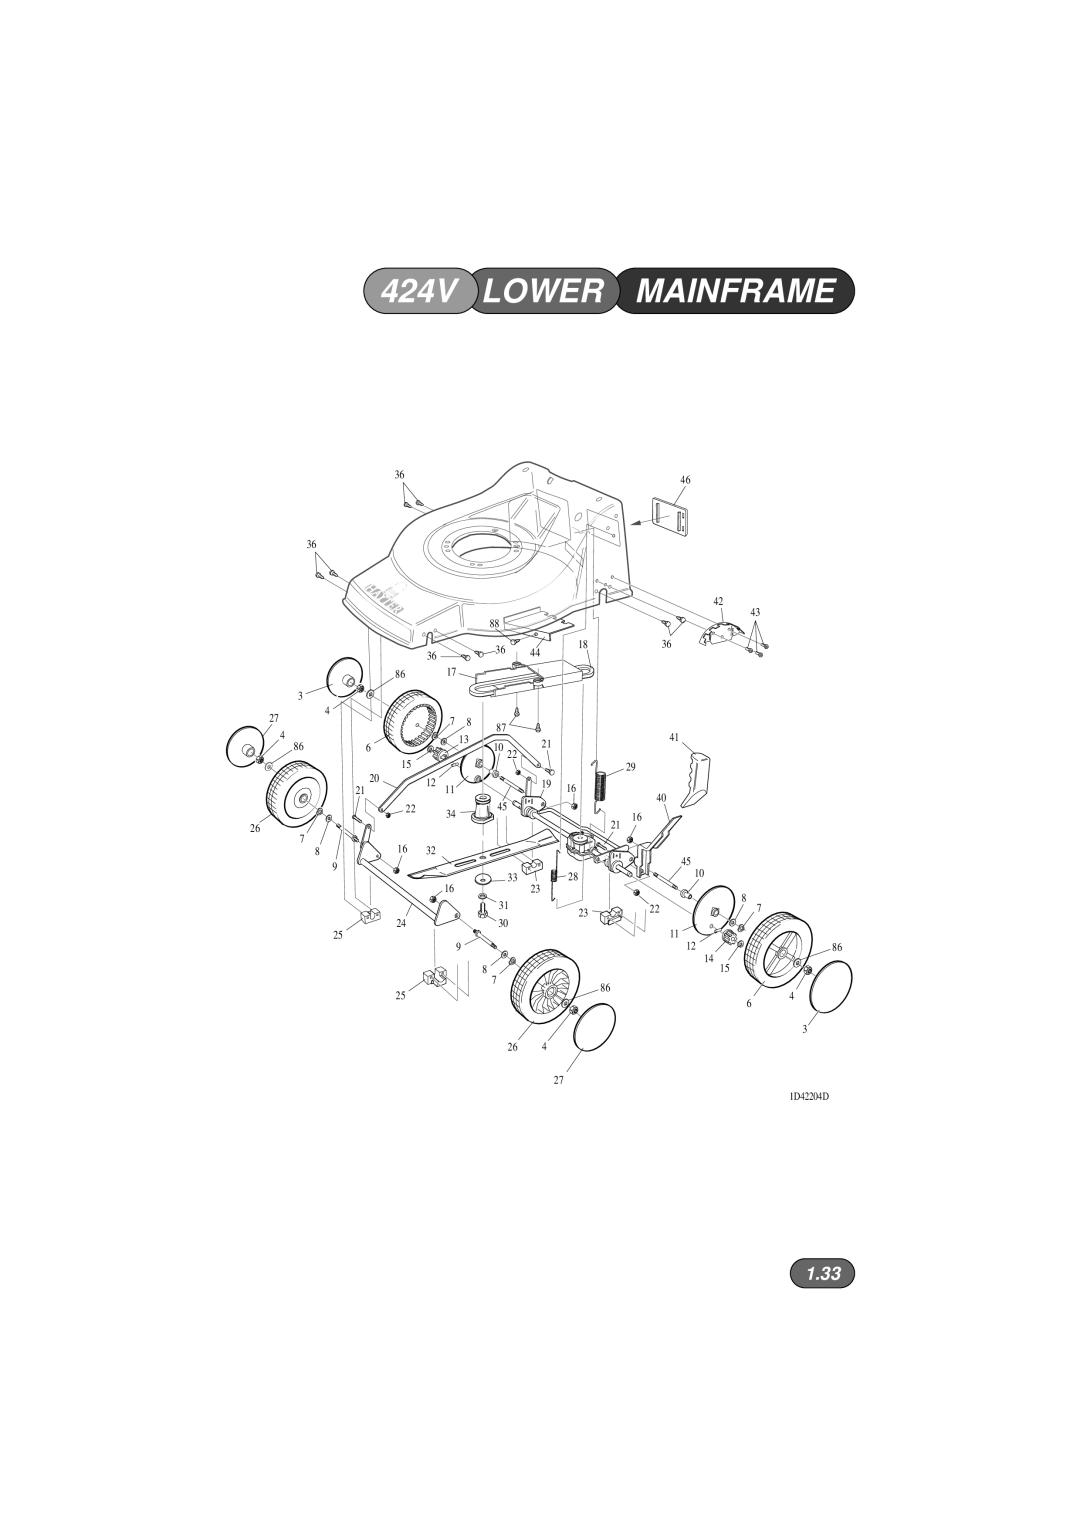 Hayter Mowers 422V, 423V manual 424V LOWER MAINFRAME, 1.33, 1D42204D 